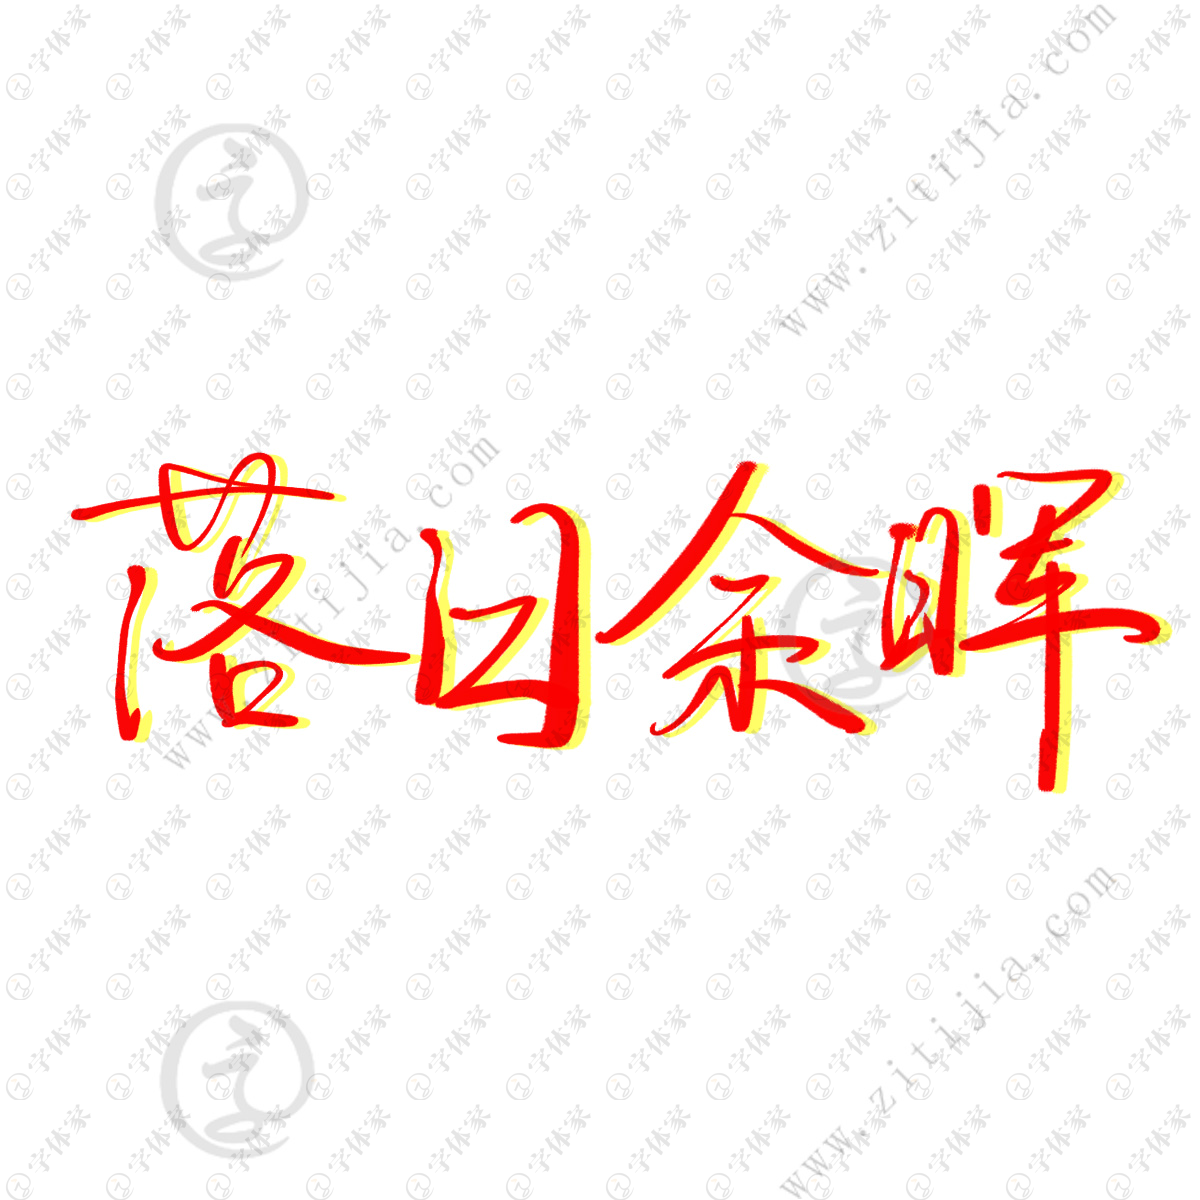 橙白色一起看日落吧文字贴纸情侣背影照片分享中文微信朋友圈 - 模板 - Canva可画